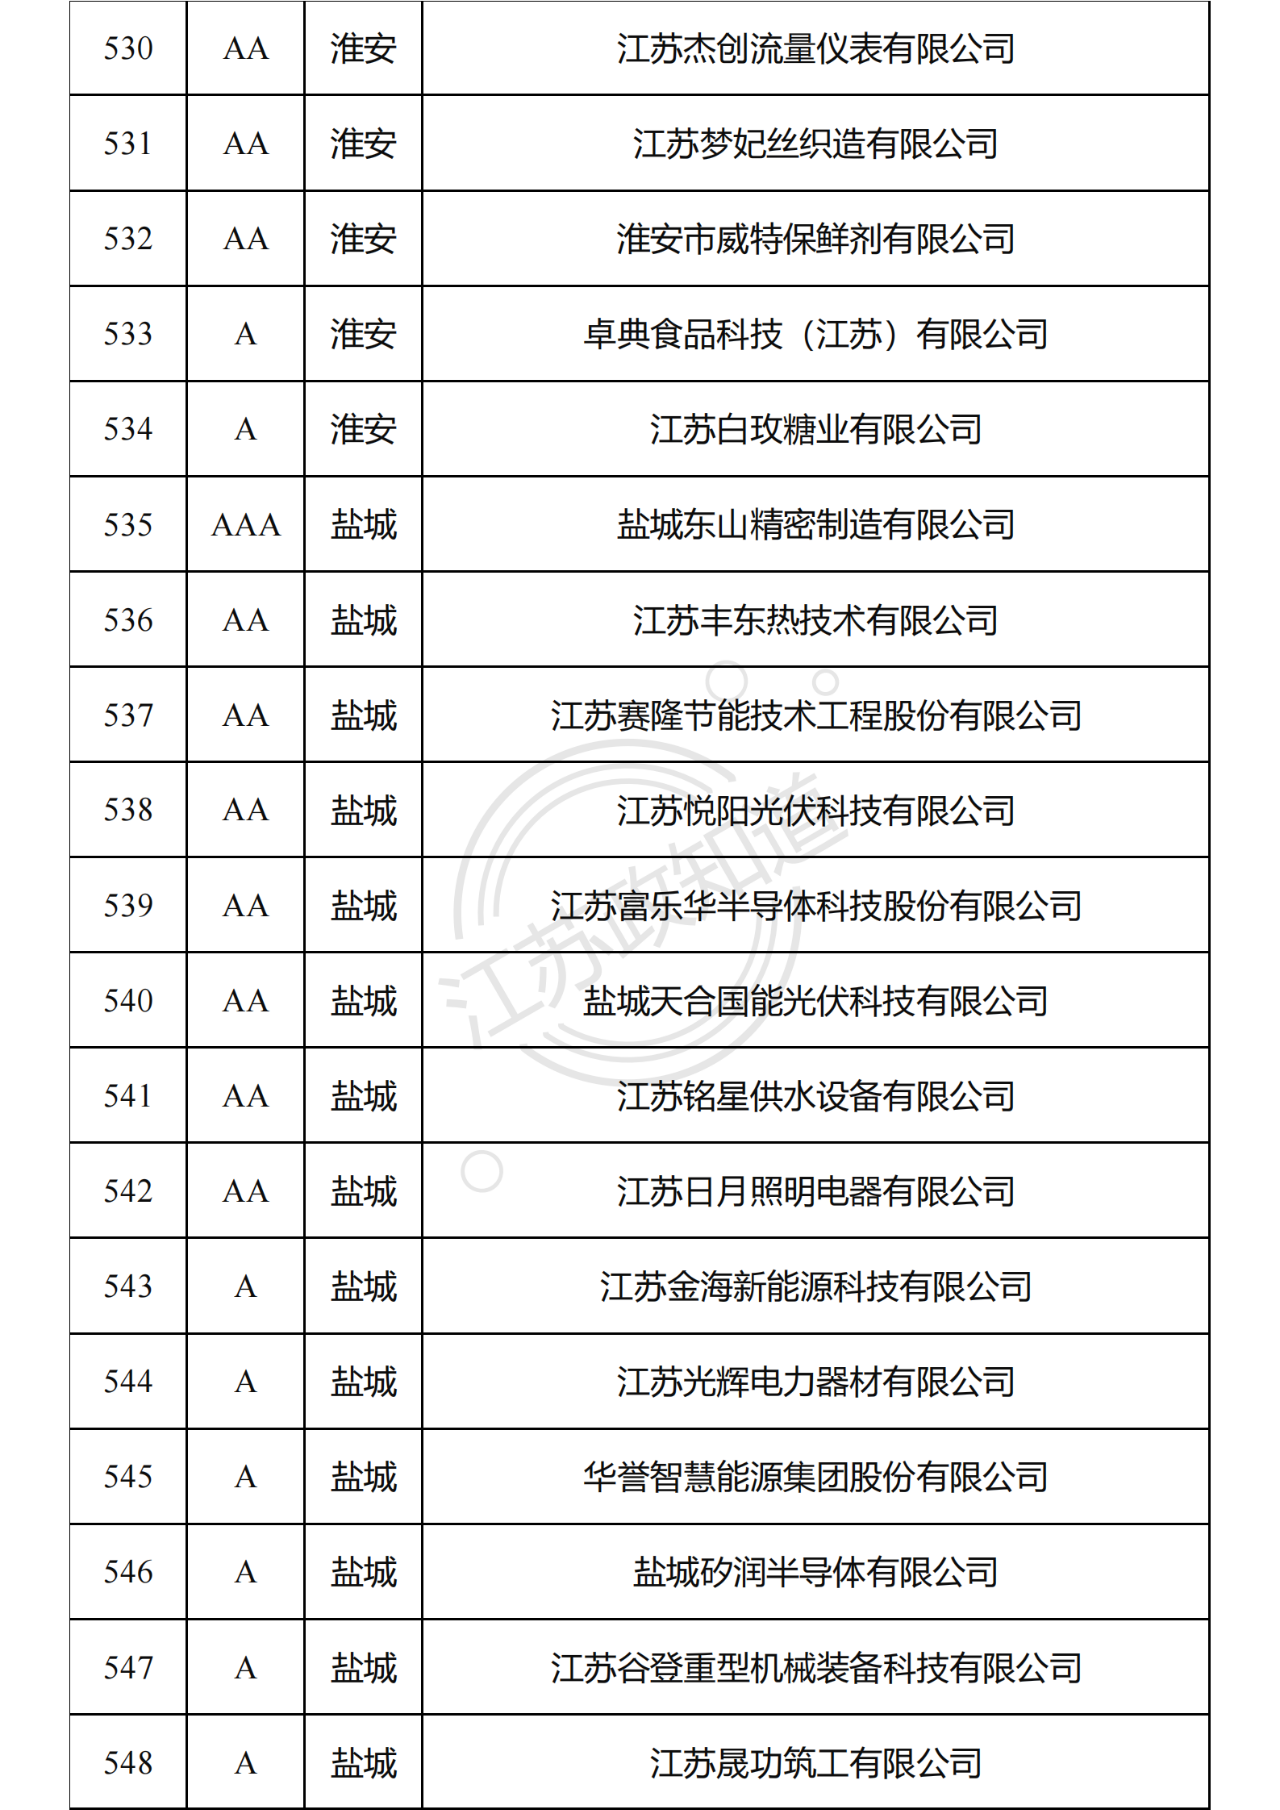 2022年度江苏省两化融合管理体系贯标试点企业培育对象拟认定名单30.png